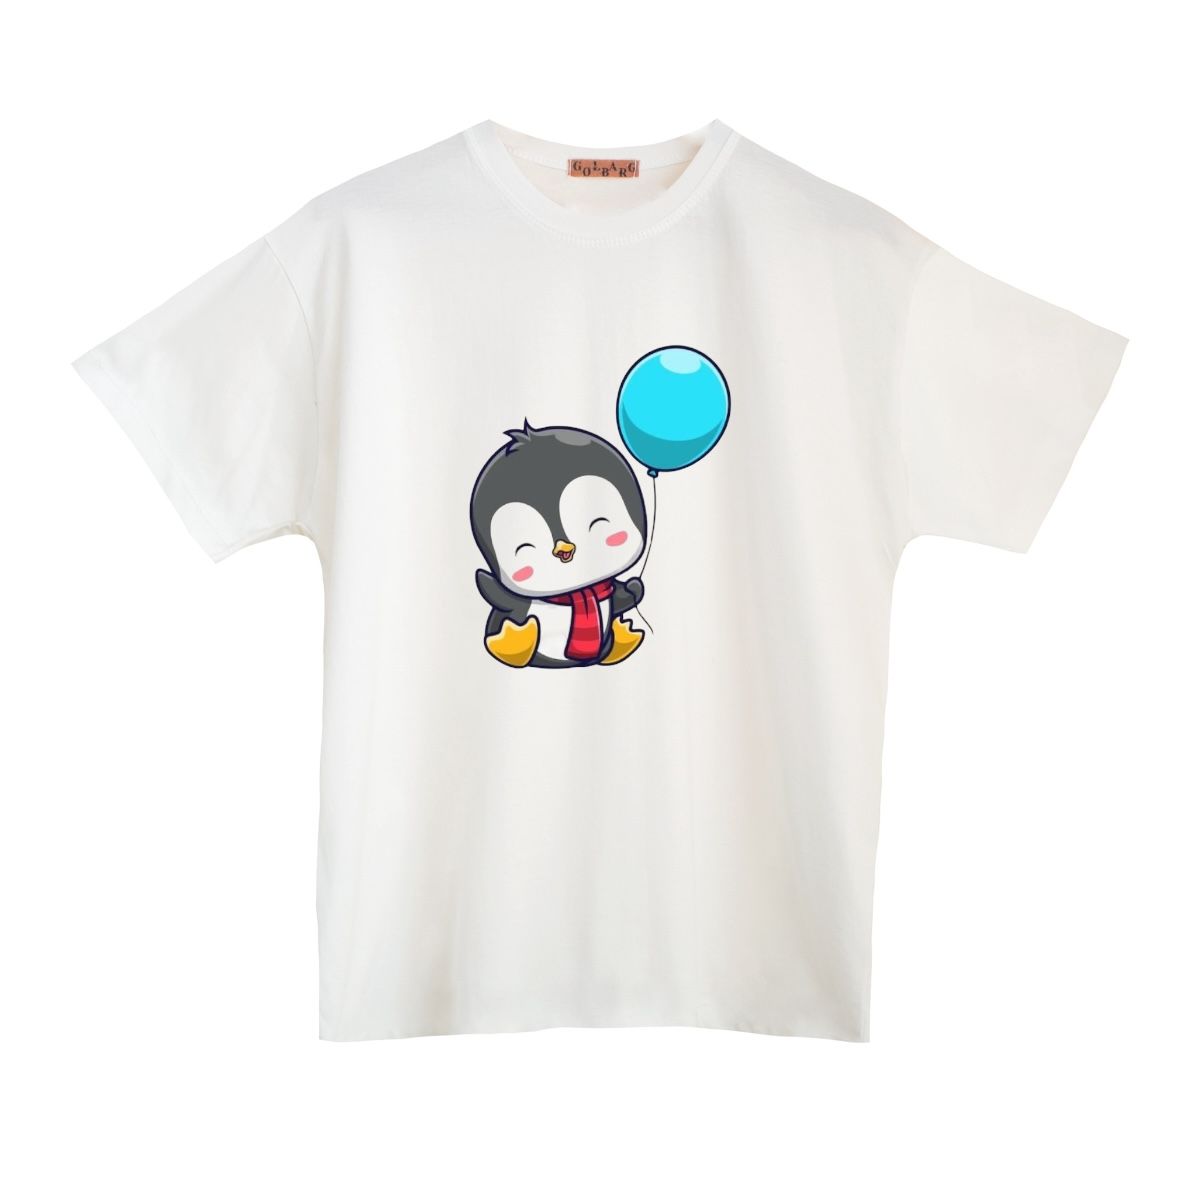 تی شرت بچگانه مدل پنگوئن کد 16 -  - 1